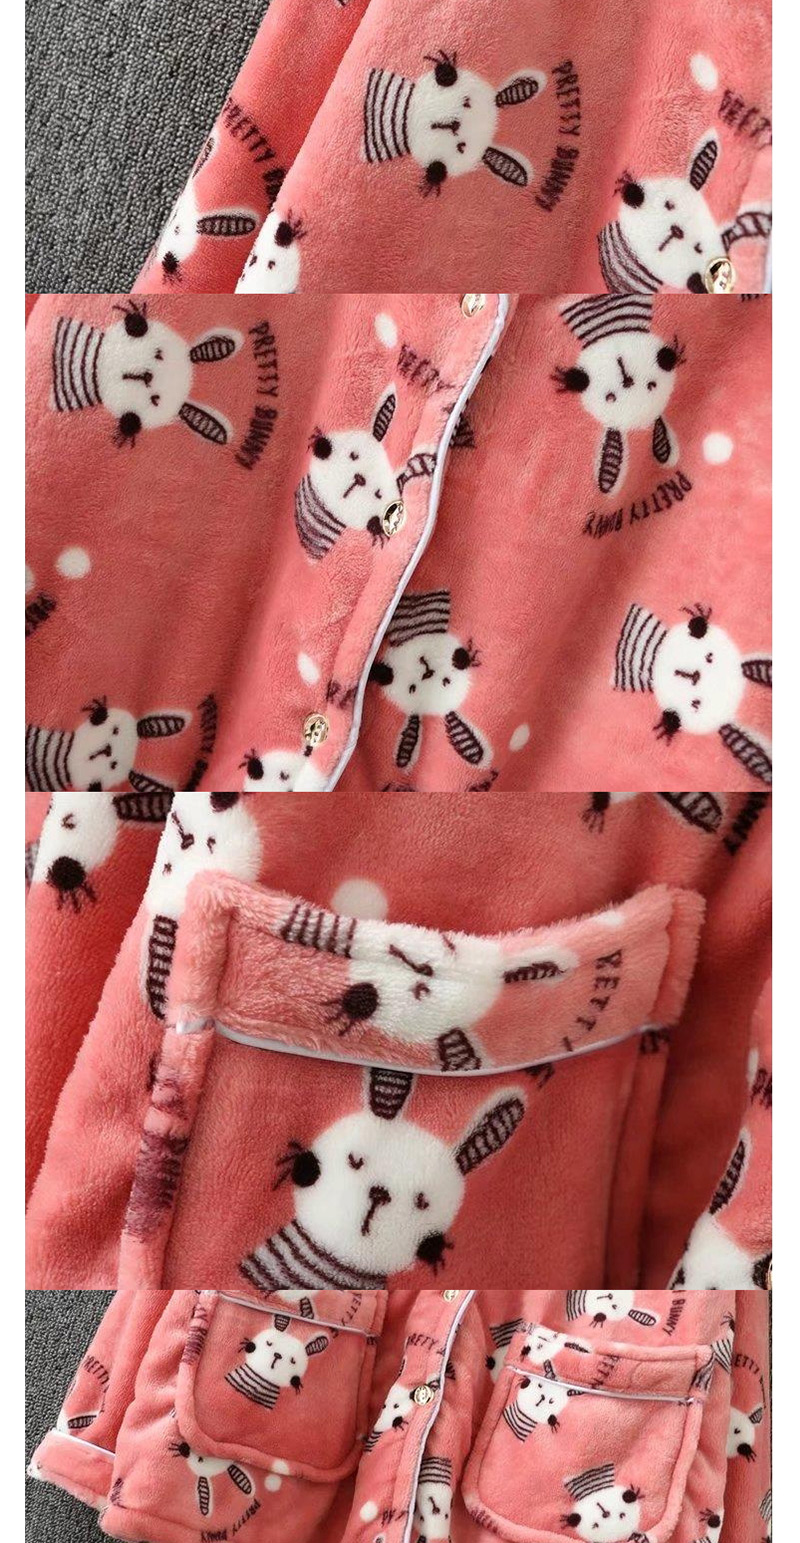 Fashion Pink Rabbit Pattern Decorated Warming Pajamas Suit,CURVE SLEEP & LOUNGE